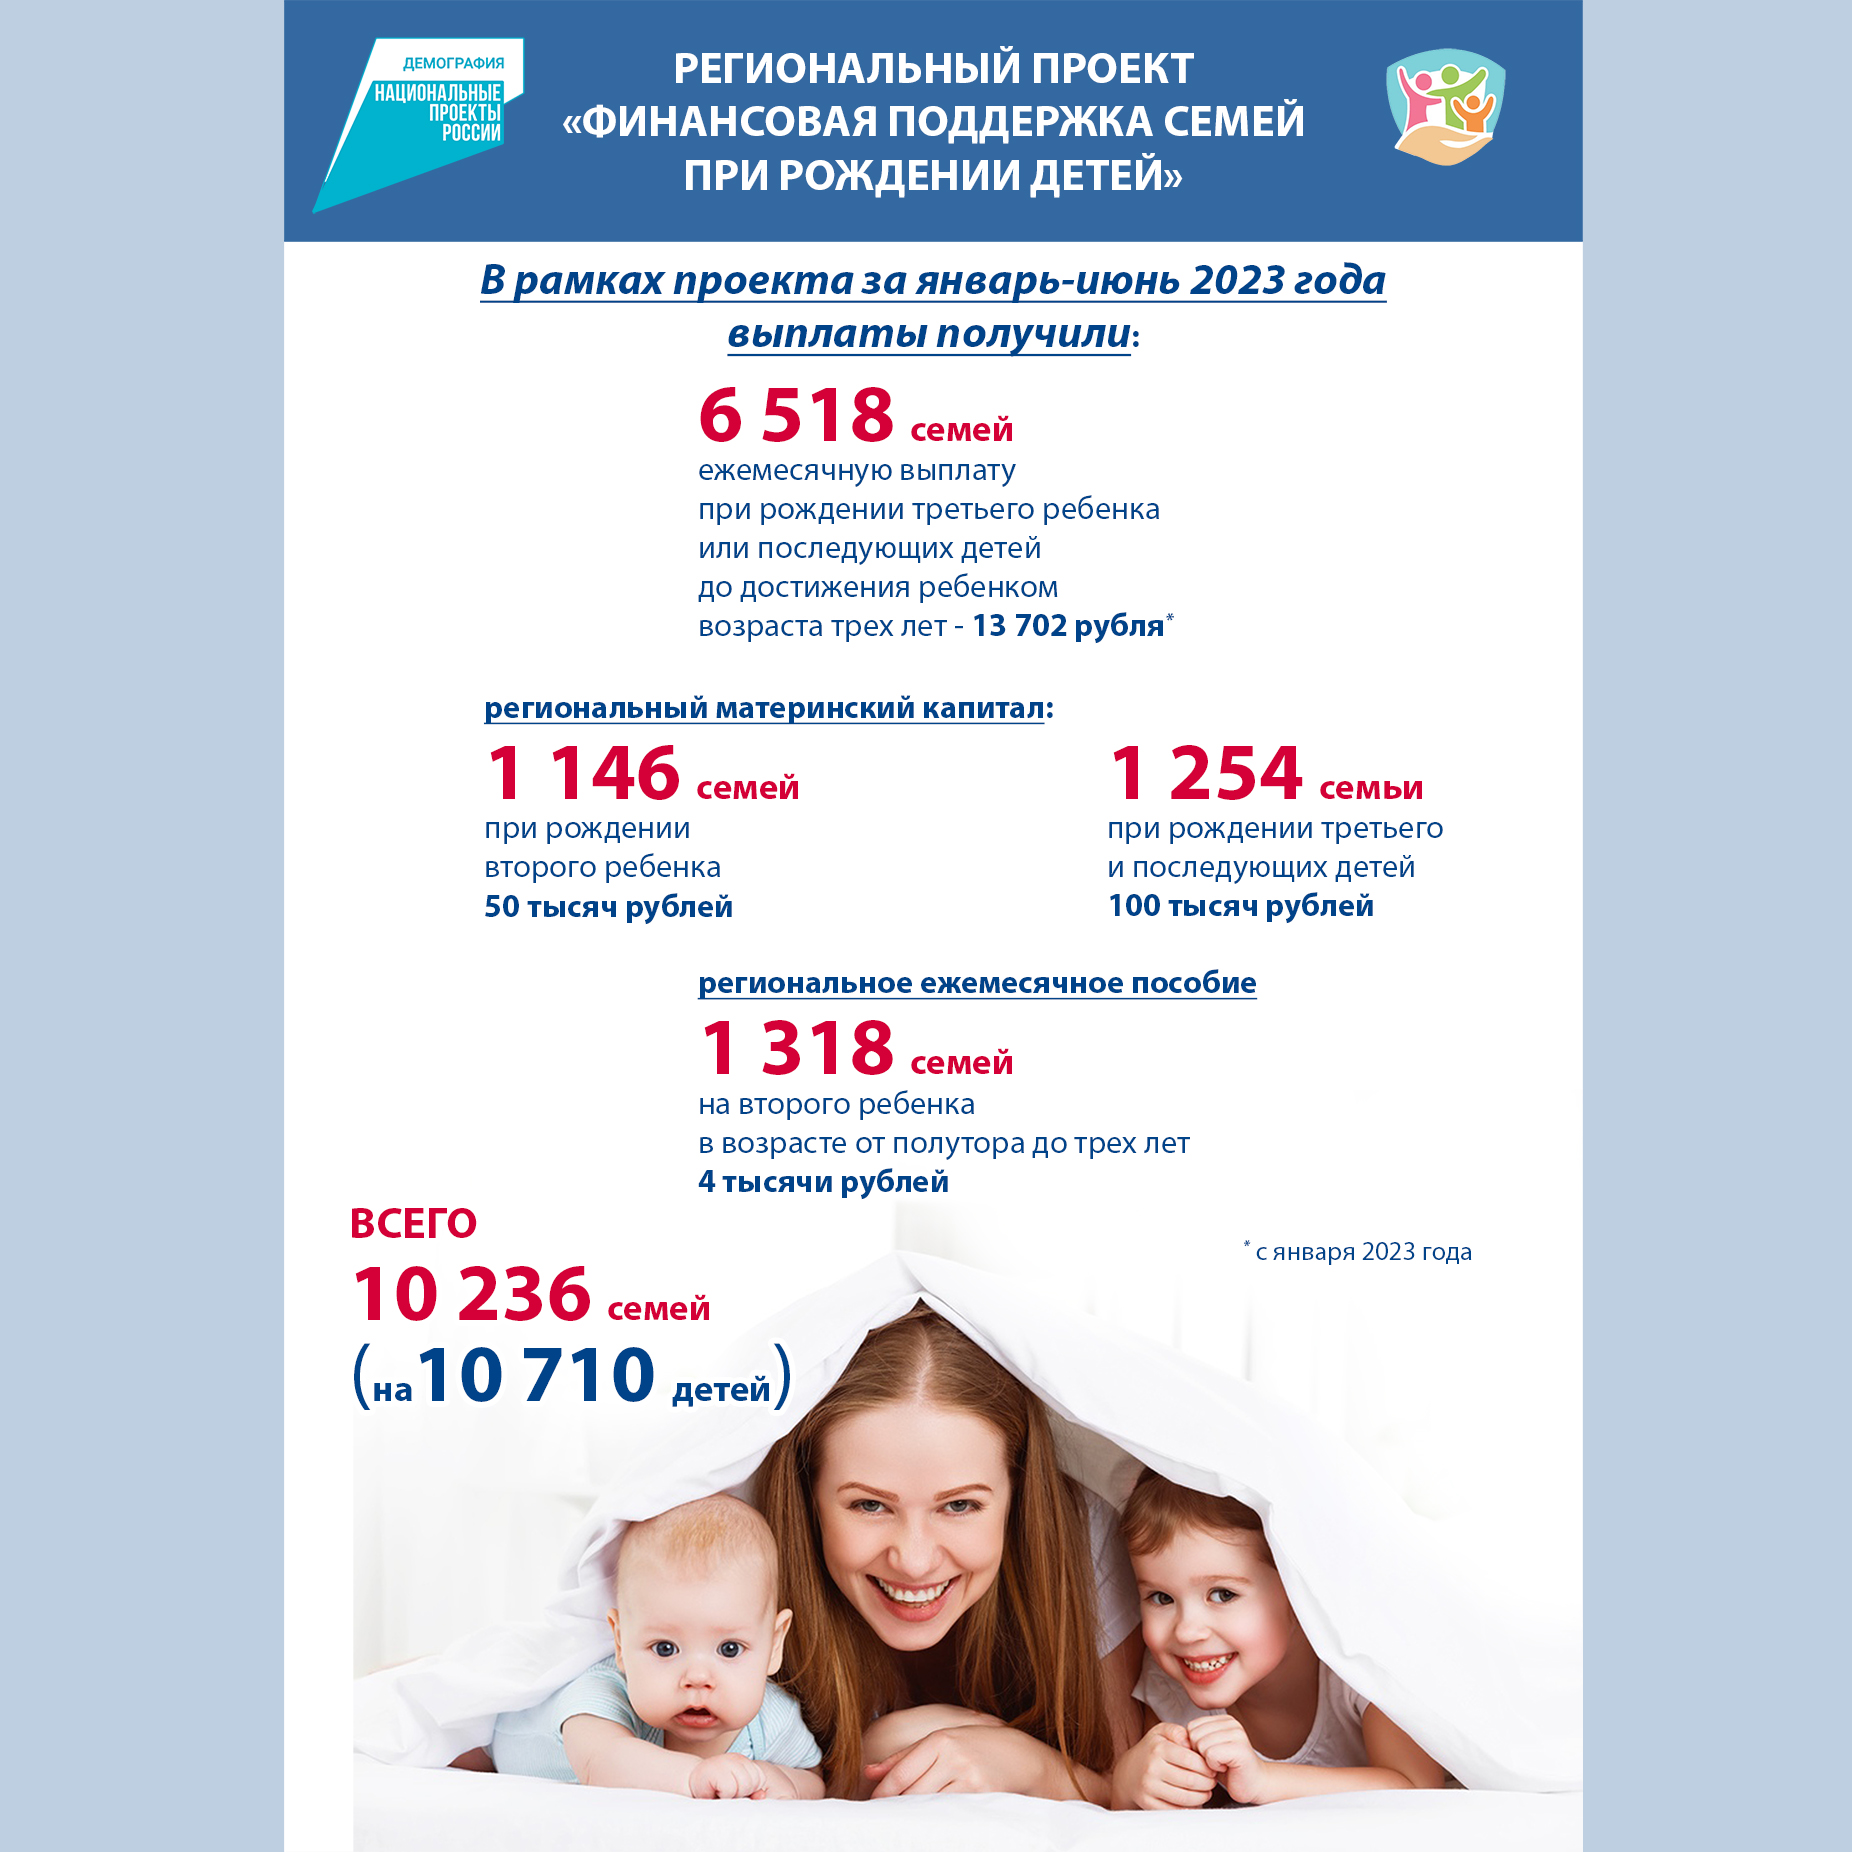 Финансовая поддержка семей при рождении детей на 1 июля 2023 года.